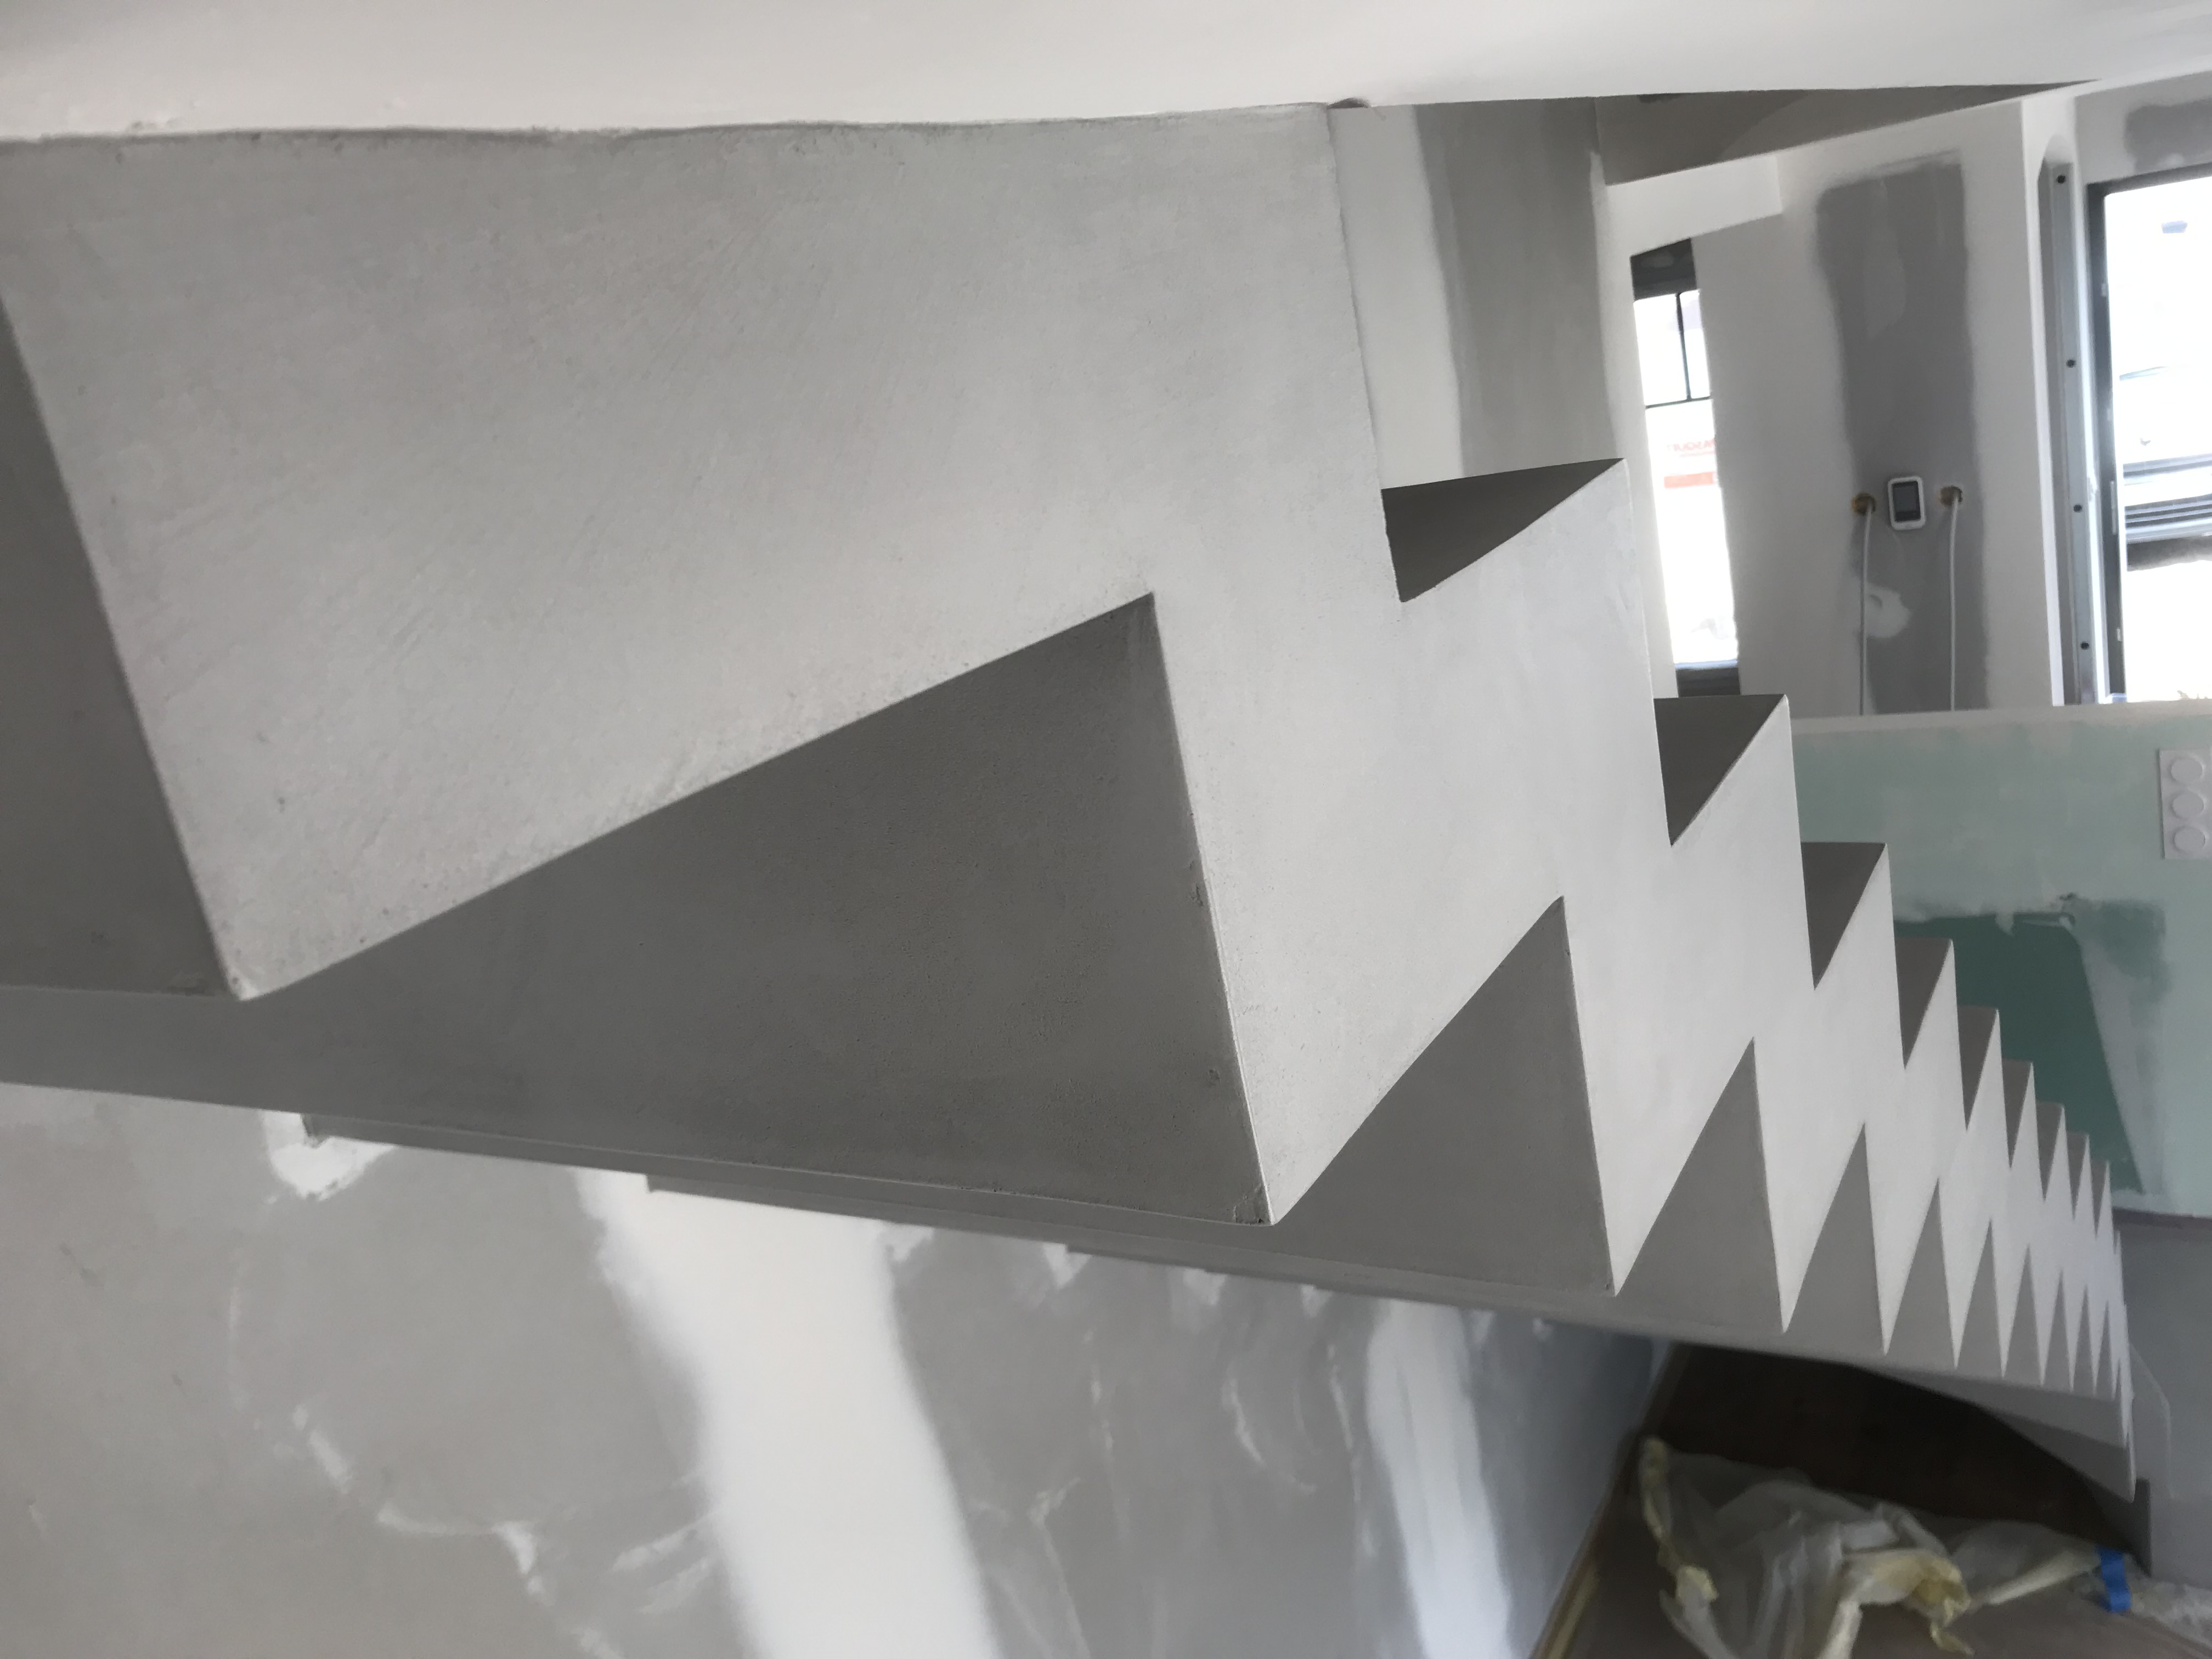 superbe escalier crémaillère contemporain en béton ciré vernis mat couleur argent villenave d ornon pour un constructeur